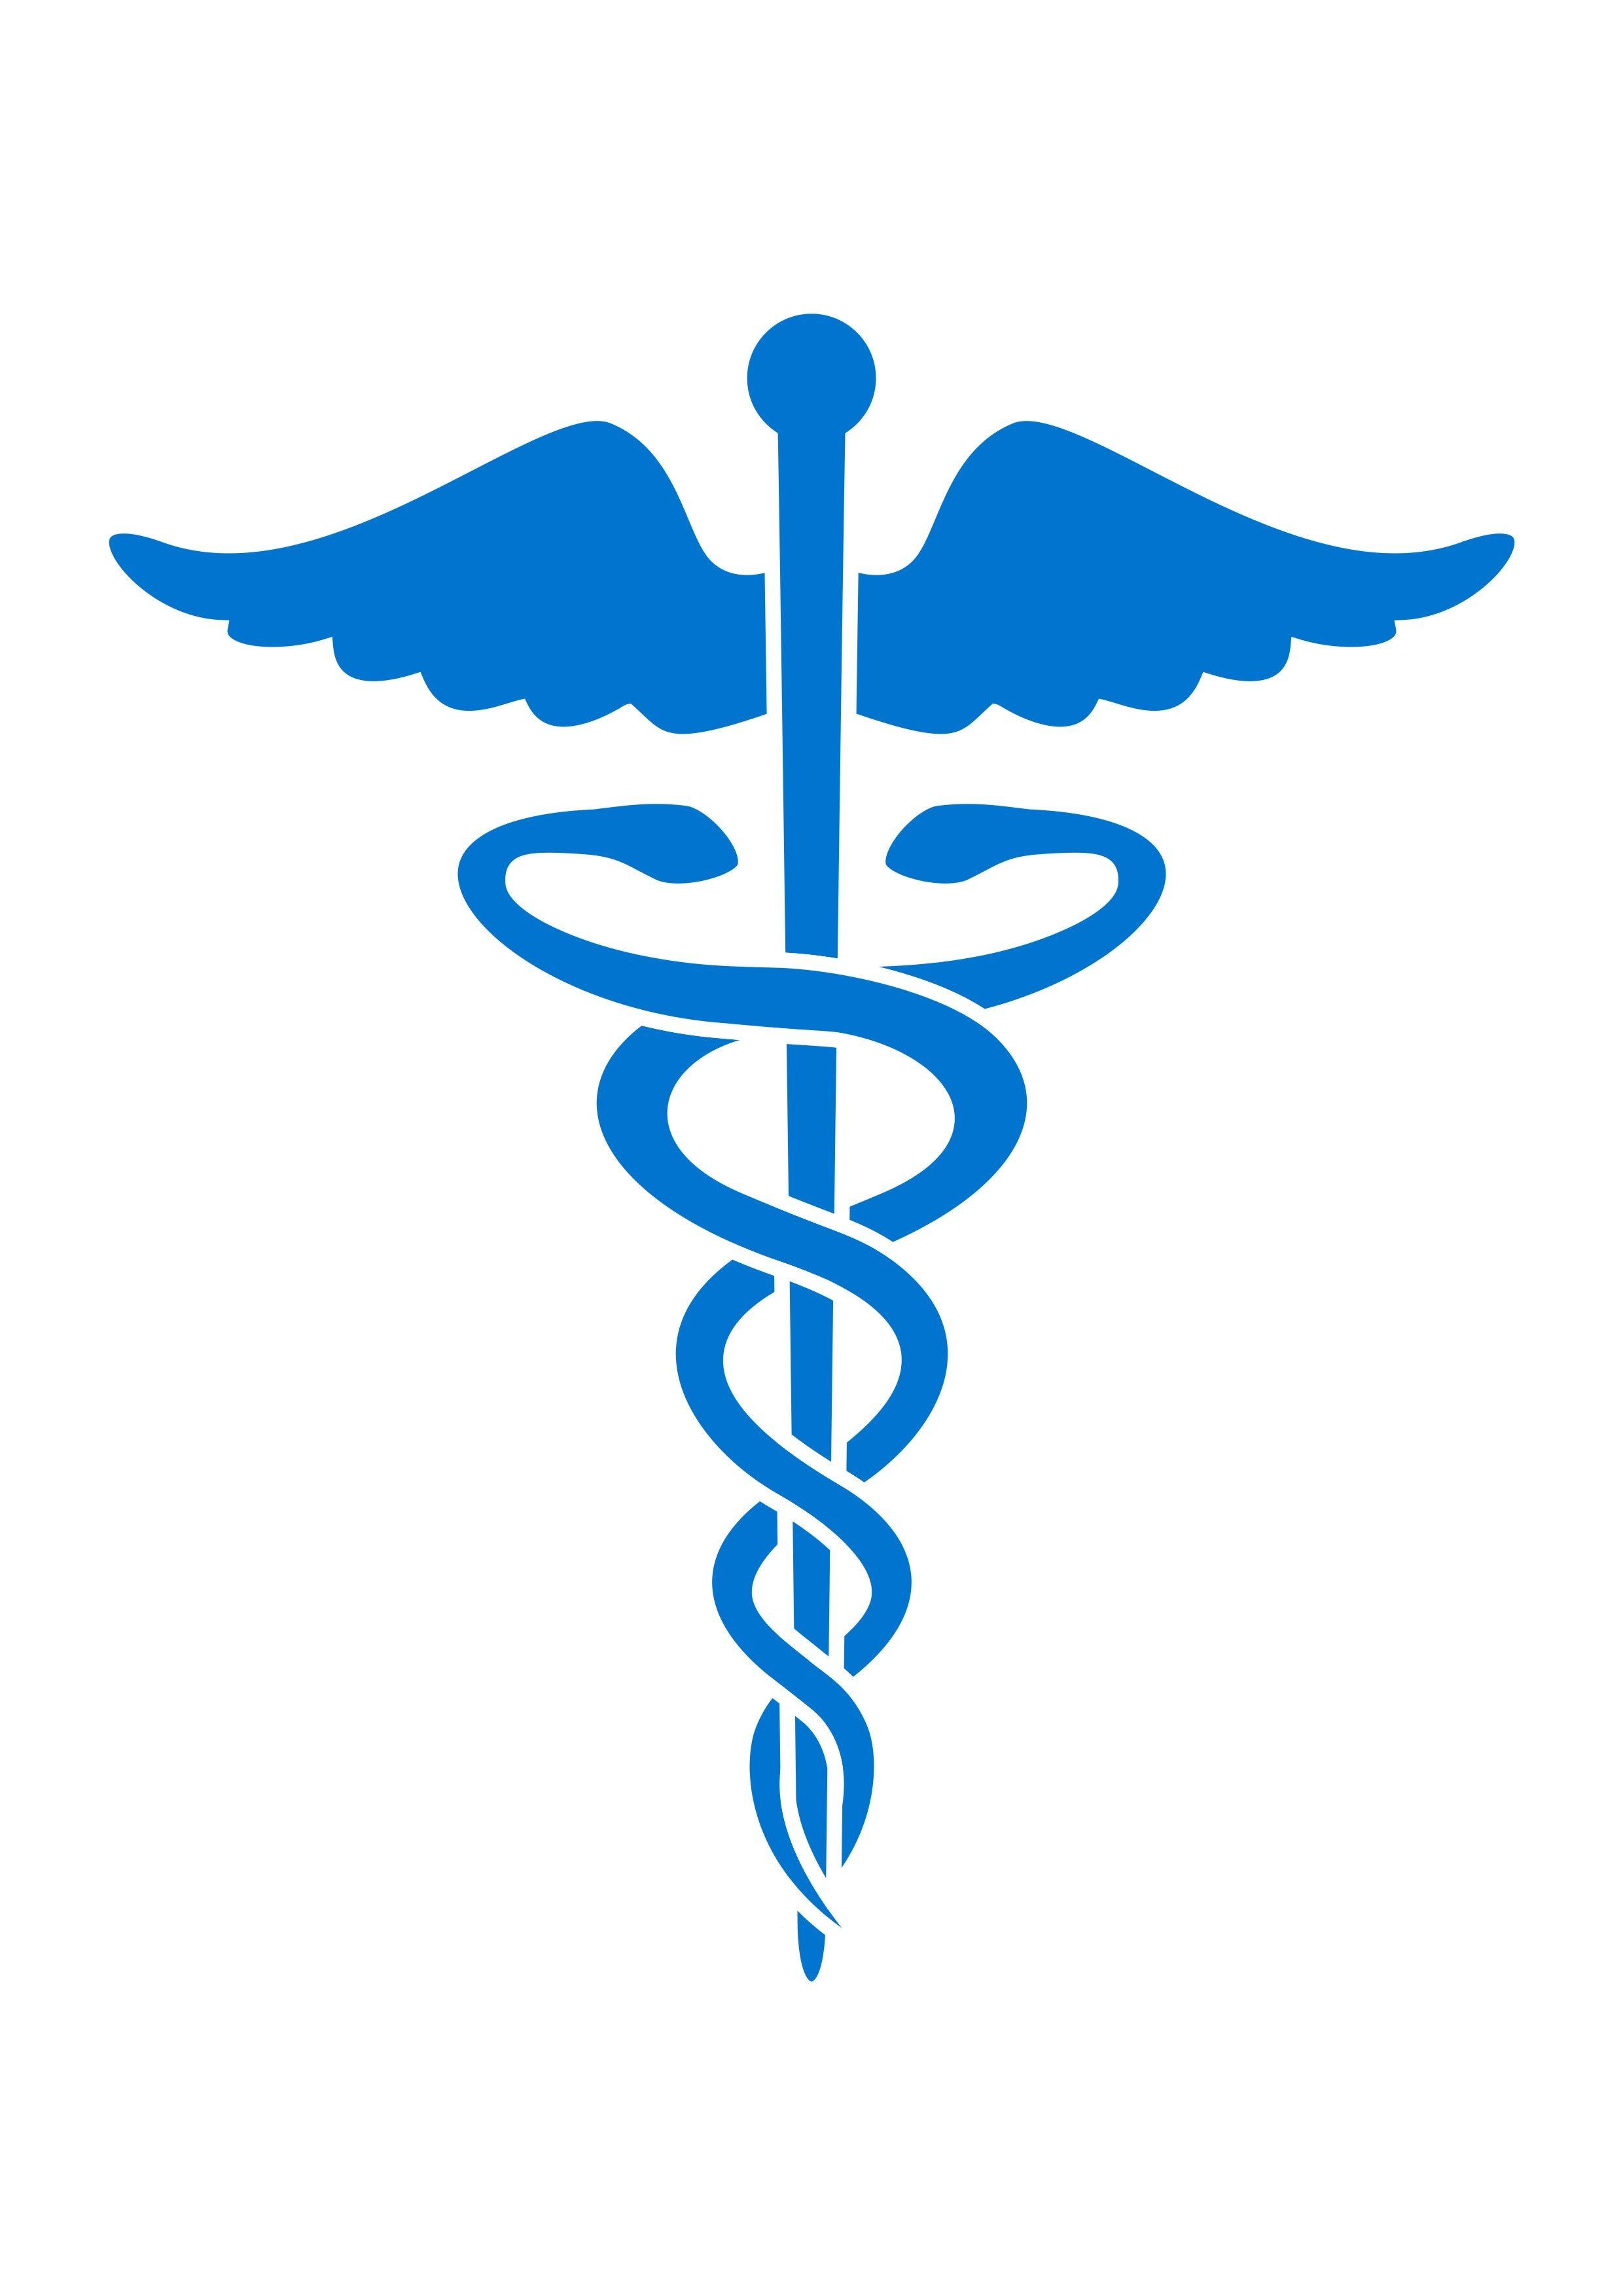 Medical Cross Snake Logo - Free Snake Health Clipart, Download Free Clip Art, Free Clip Art